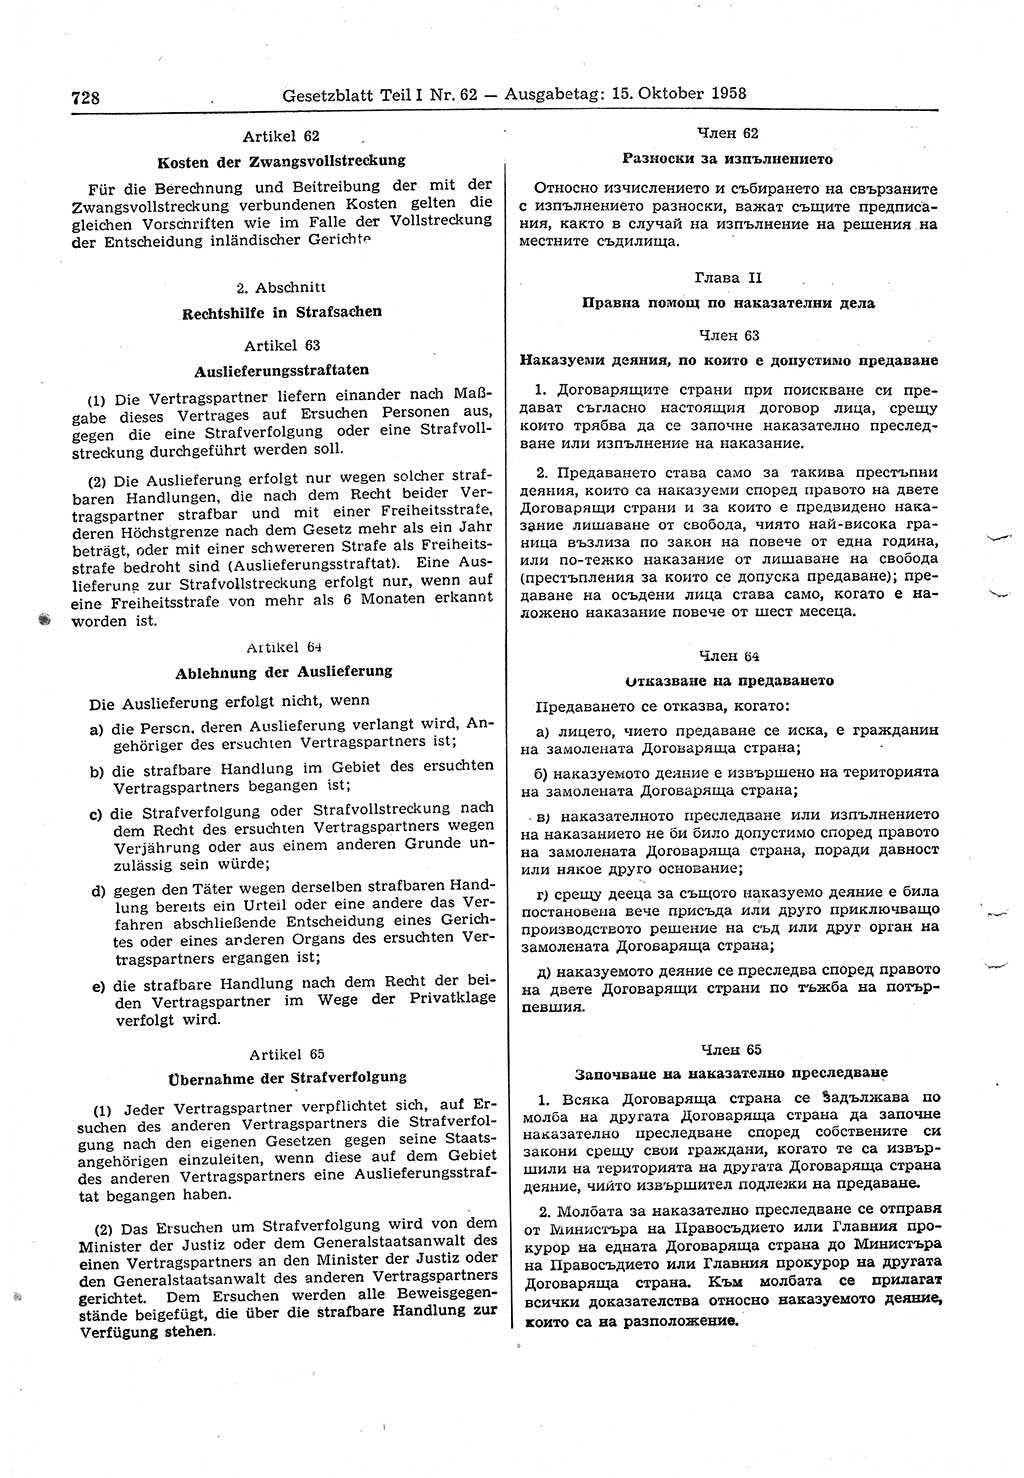 Gesetzblatt (GBl.) der Deutschen Demokratischen Republik (DDR) Teil Ⅰ 1958, Seite 728 (GBl. DDR Ⅰ 1958, S. 728)